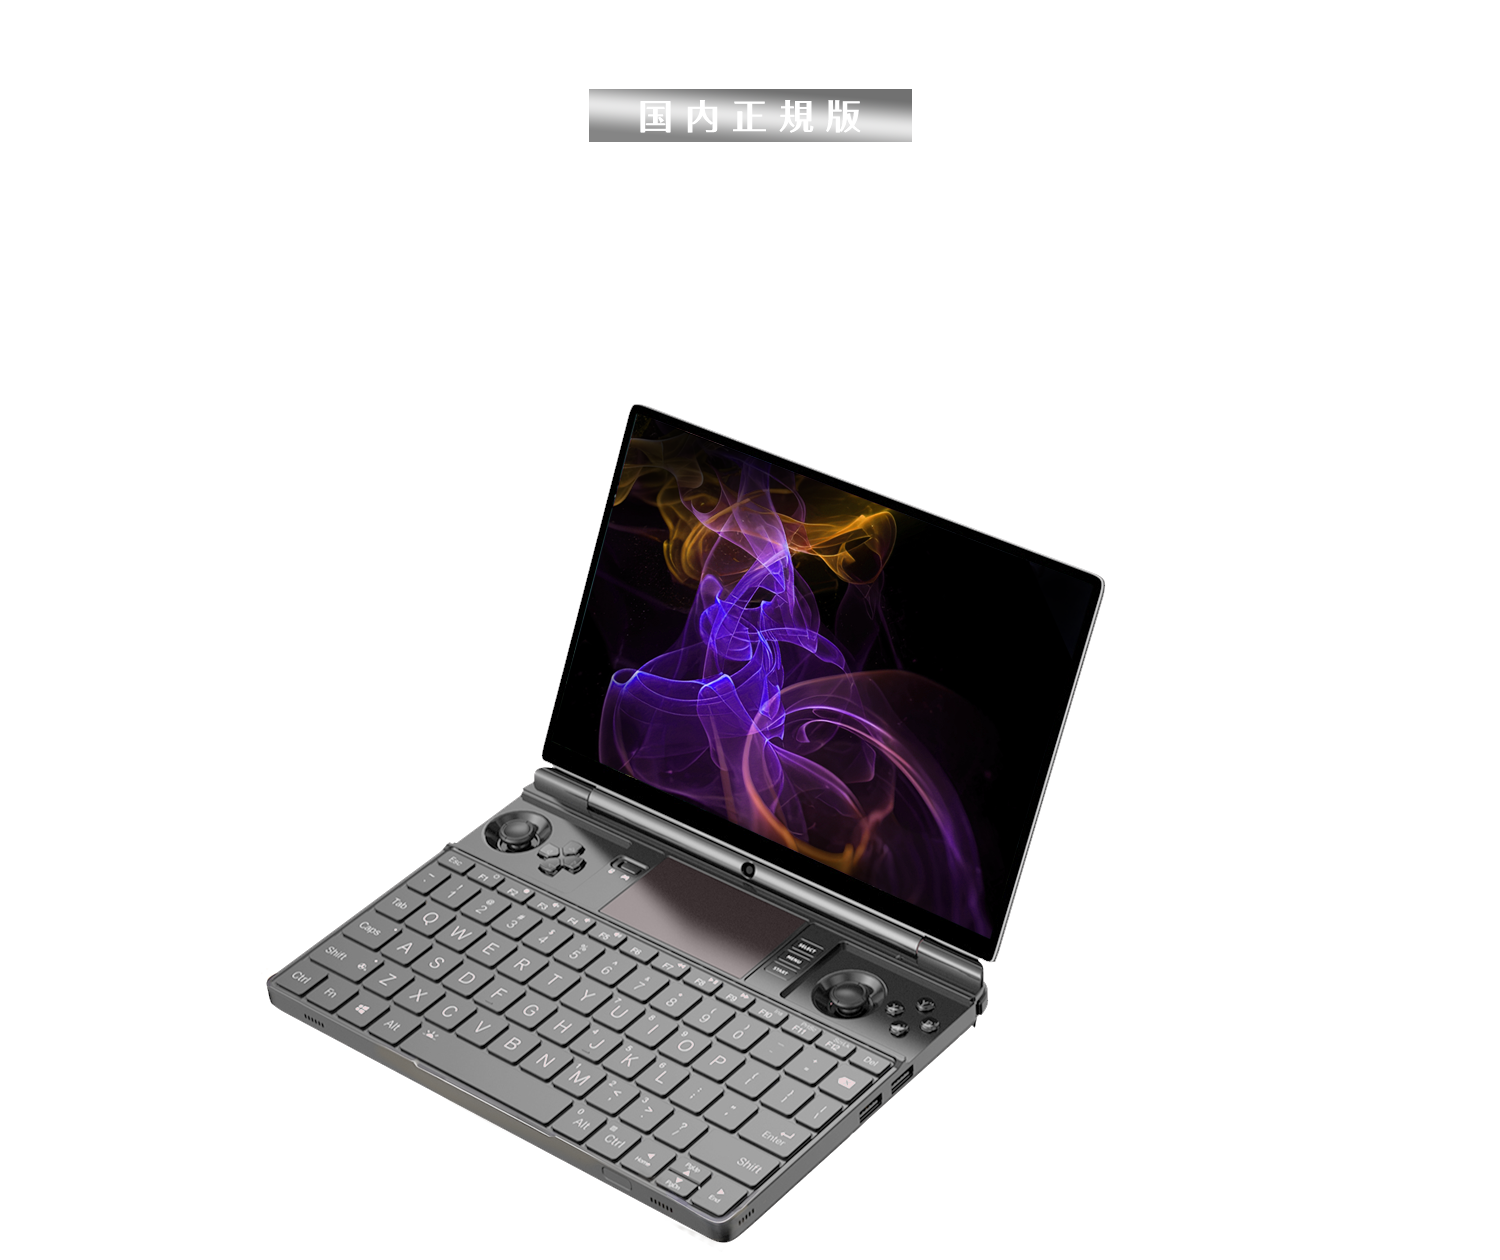 GPD WIN Max 2 国内正規版